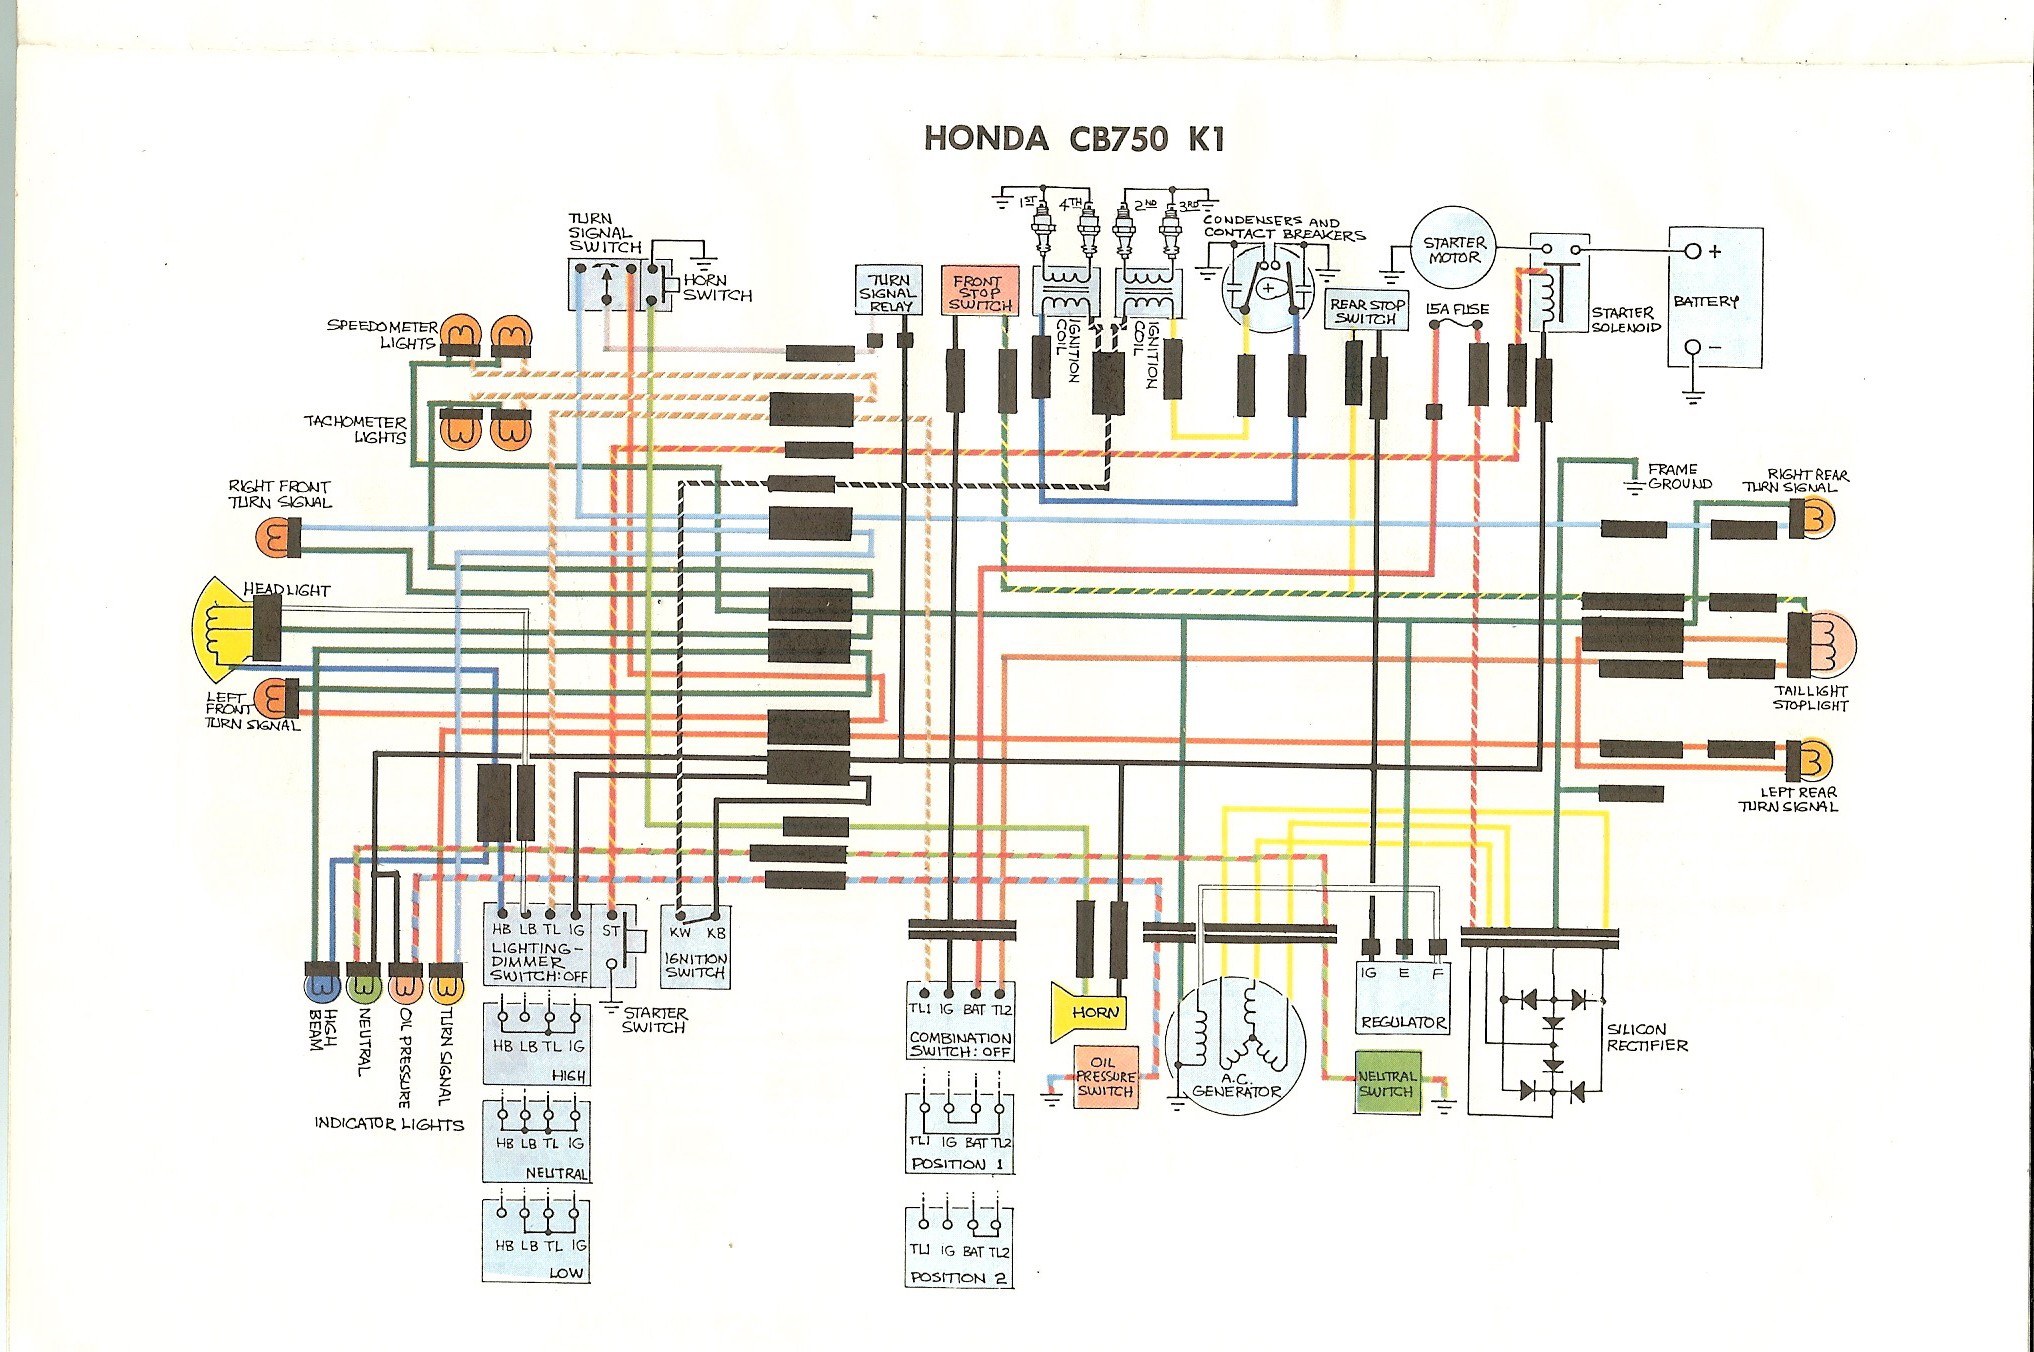 Honda Cb750 Wiring Diagram from detoxicrecenze.com